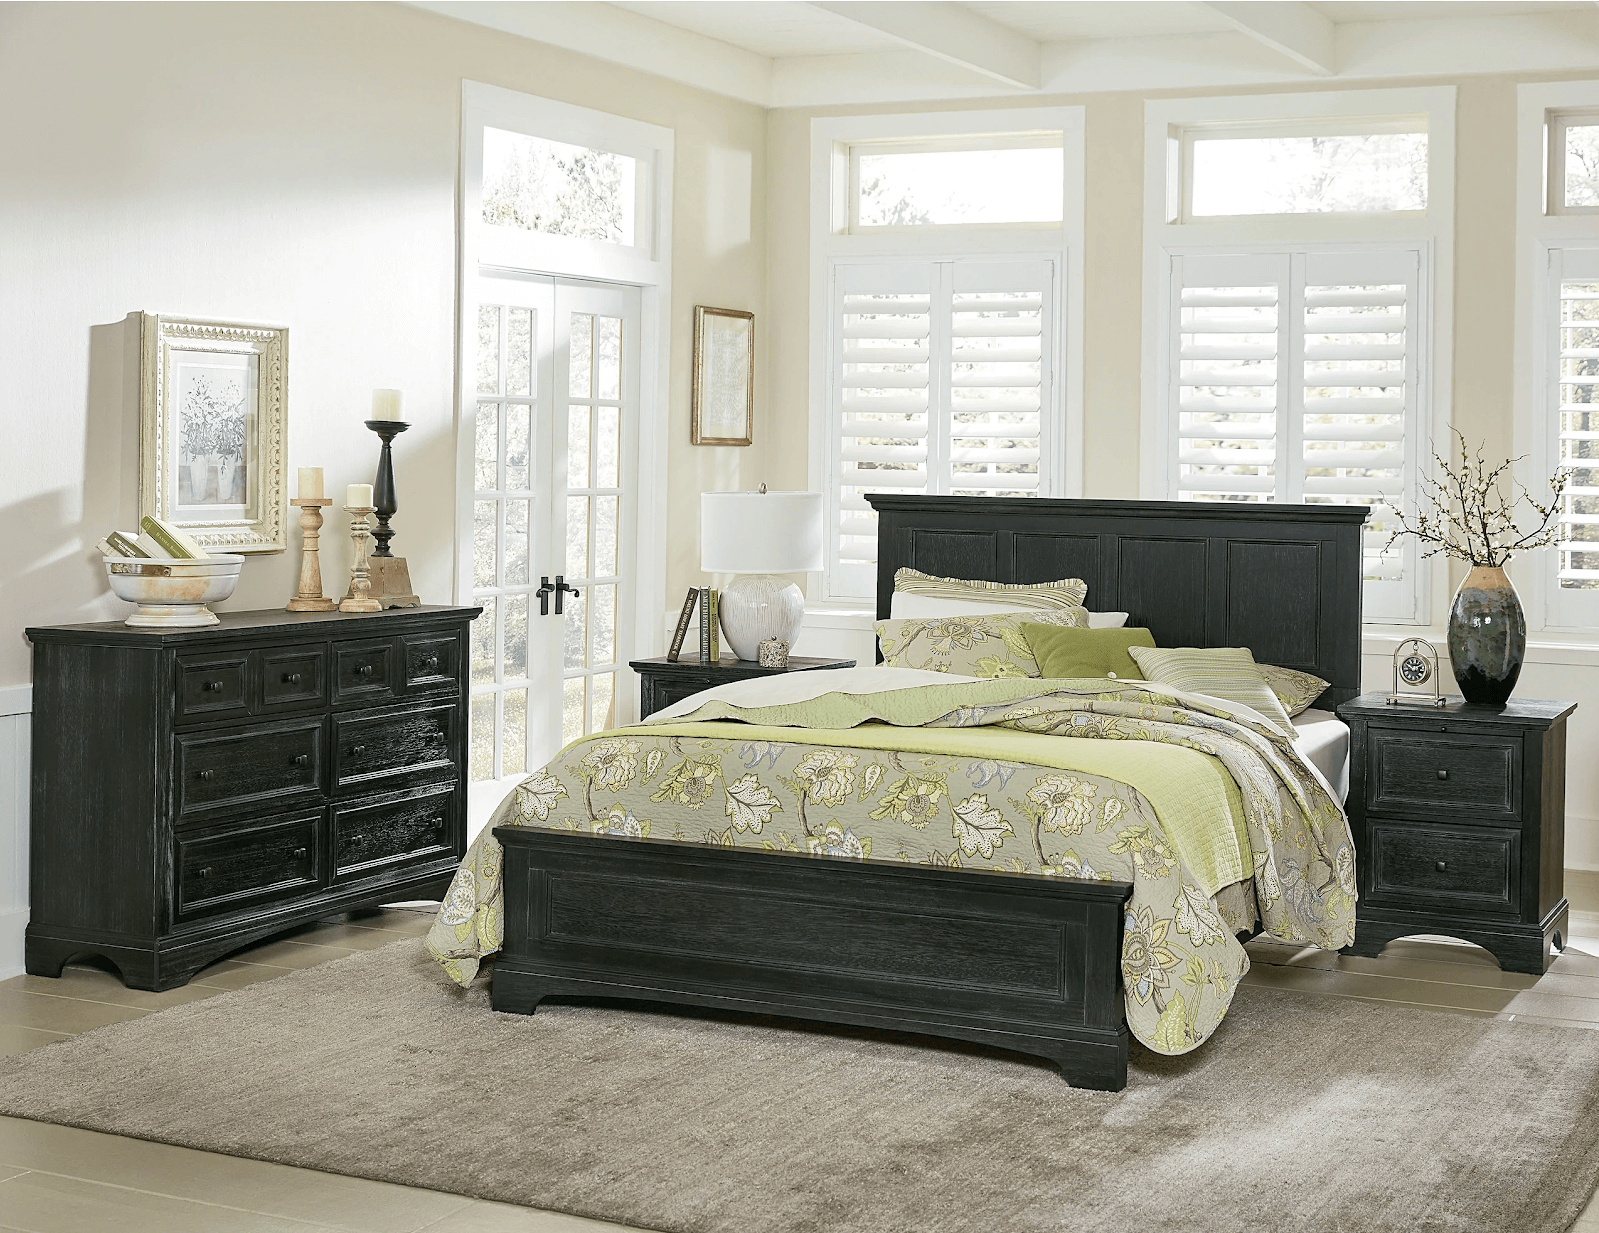  Bộ giường tủ cưới màu đen với thiết kế tủ để đồ gọn gàng giúp tối ưu diện tích